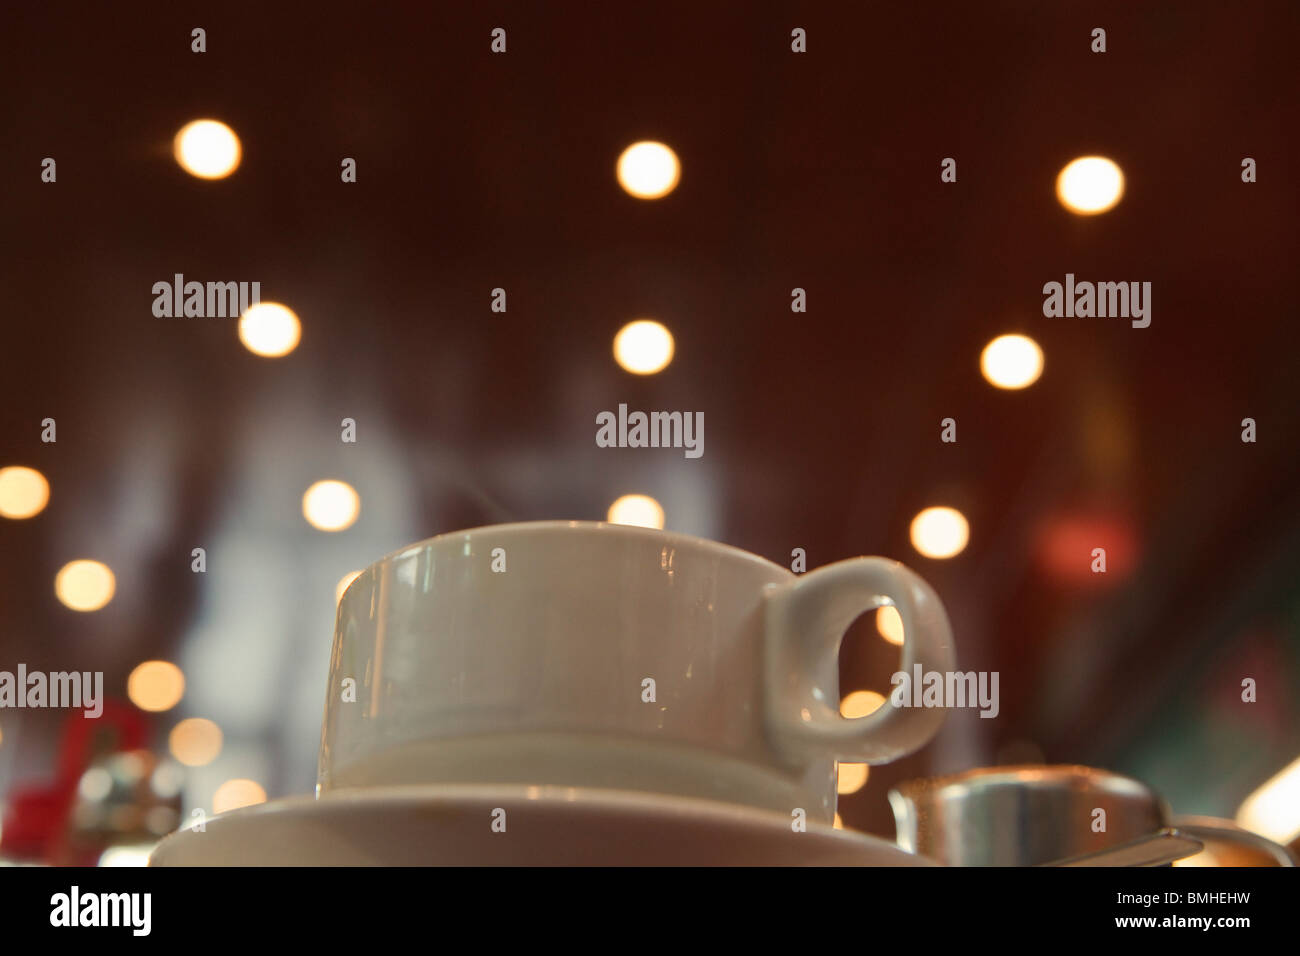 Tasse de café ; Tasse assis sur une soucoupe avec des lumières à l'arrière-plan Banque D'Images